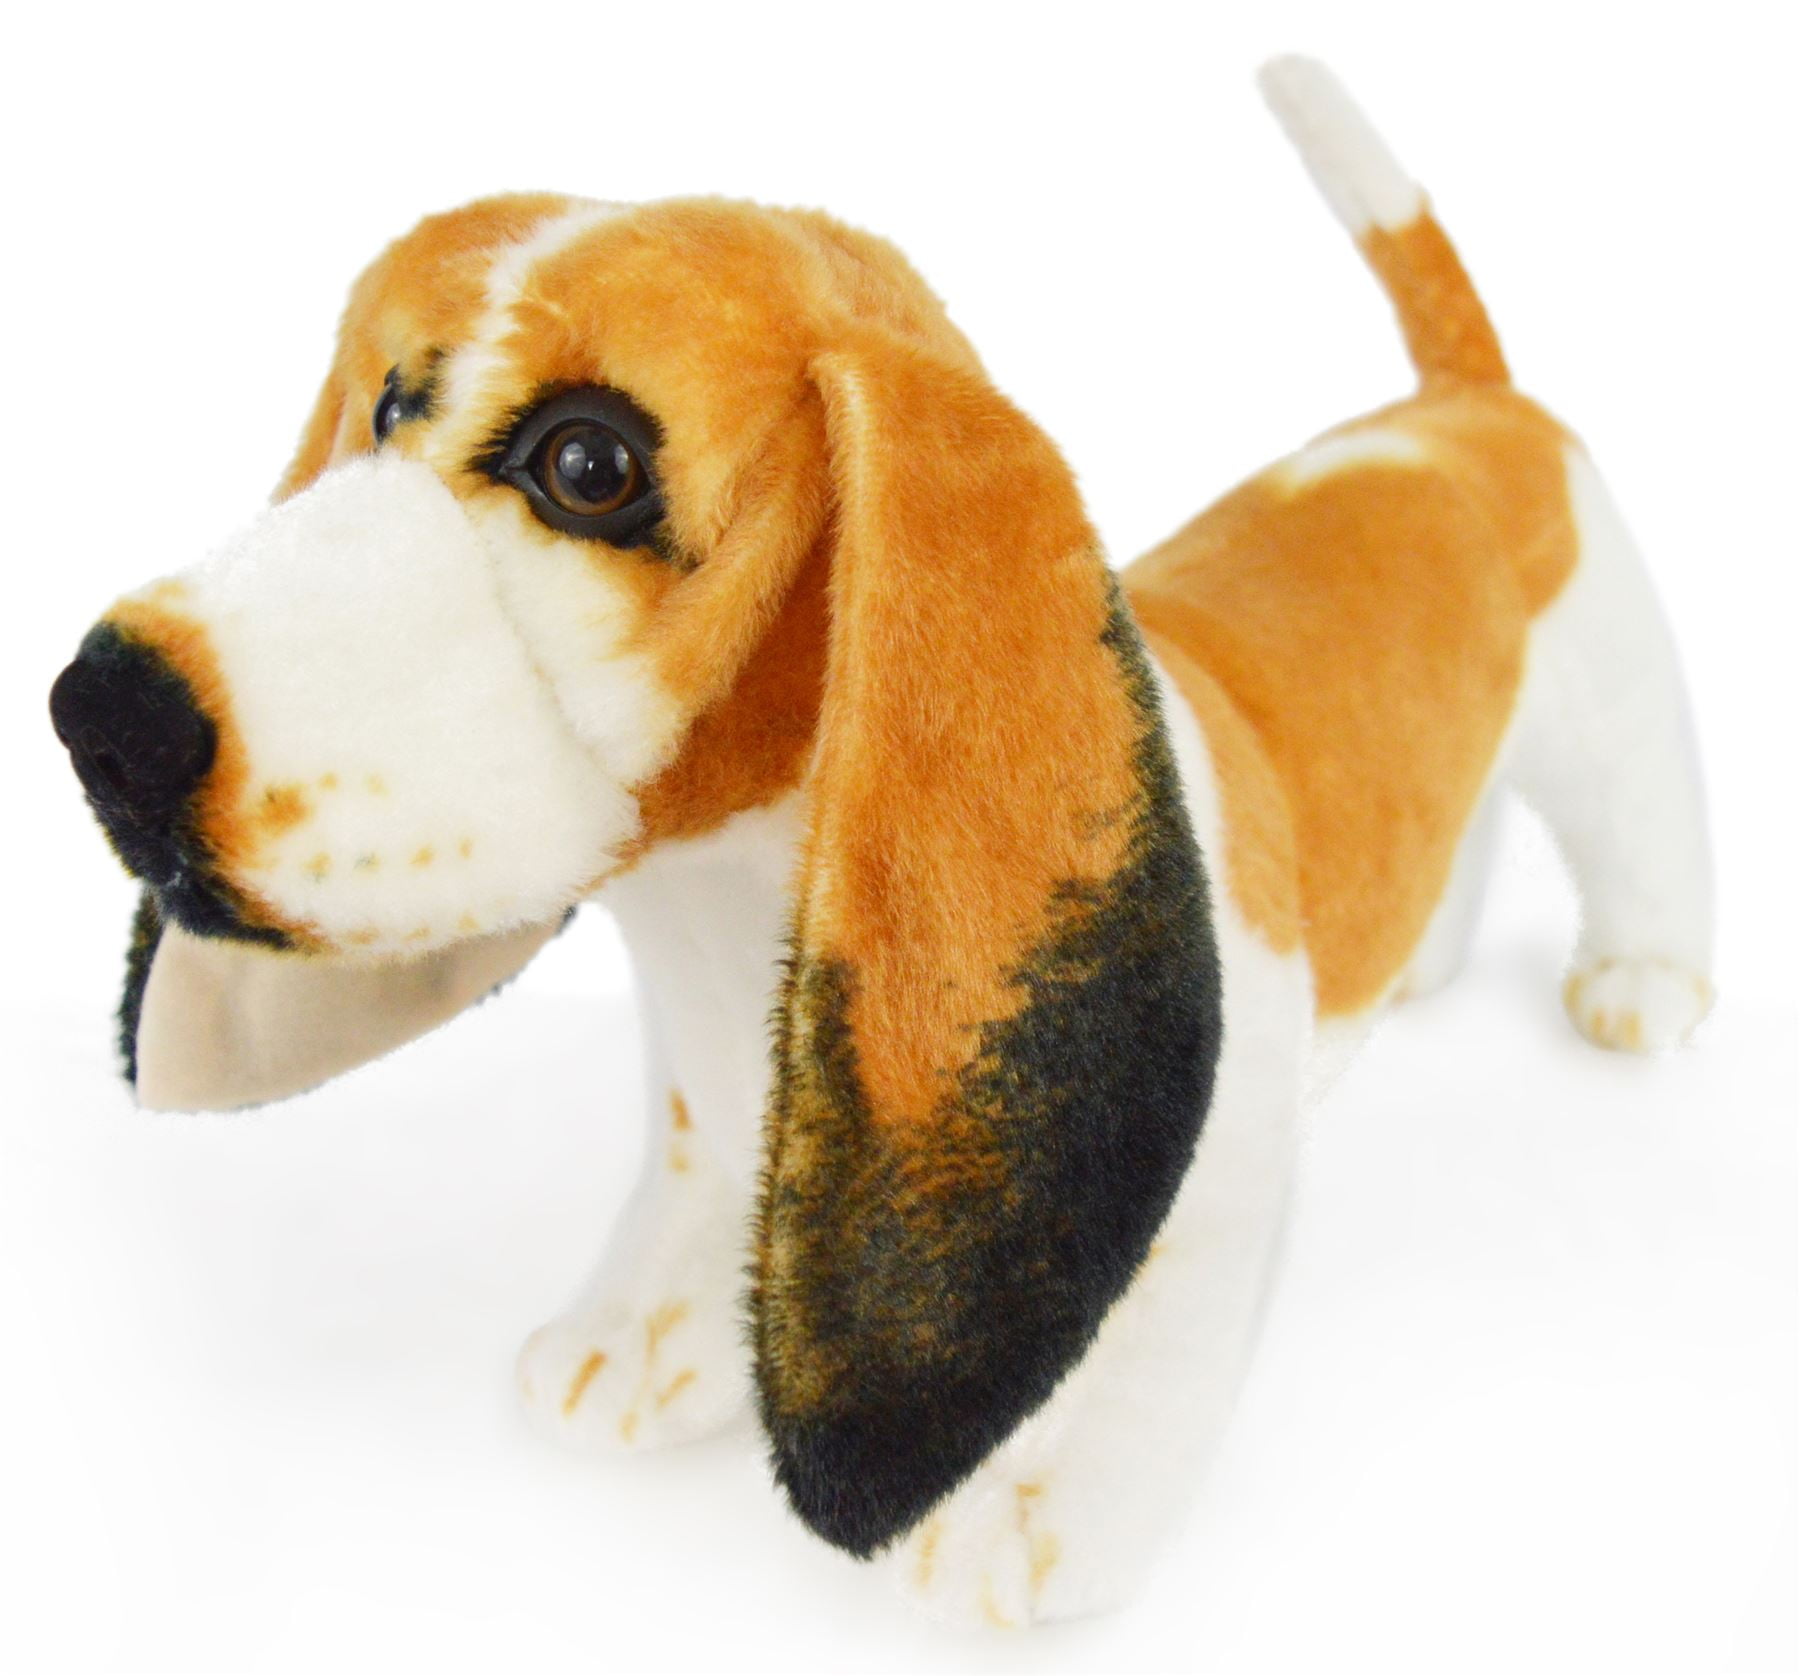 stuffed basset hound